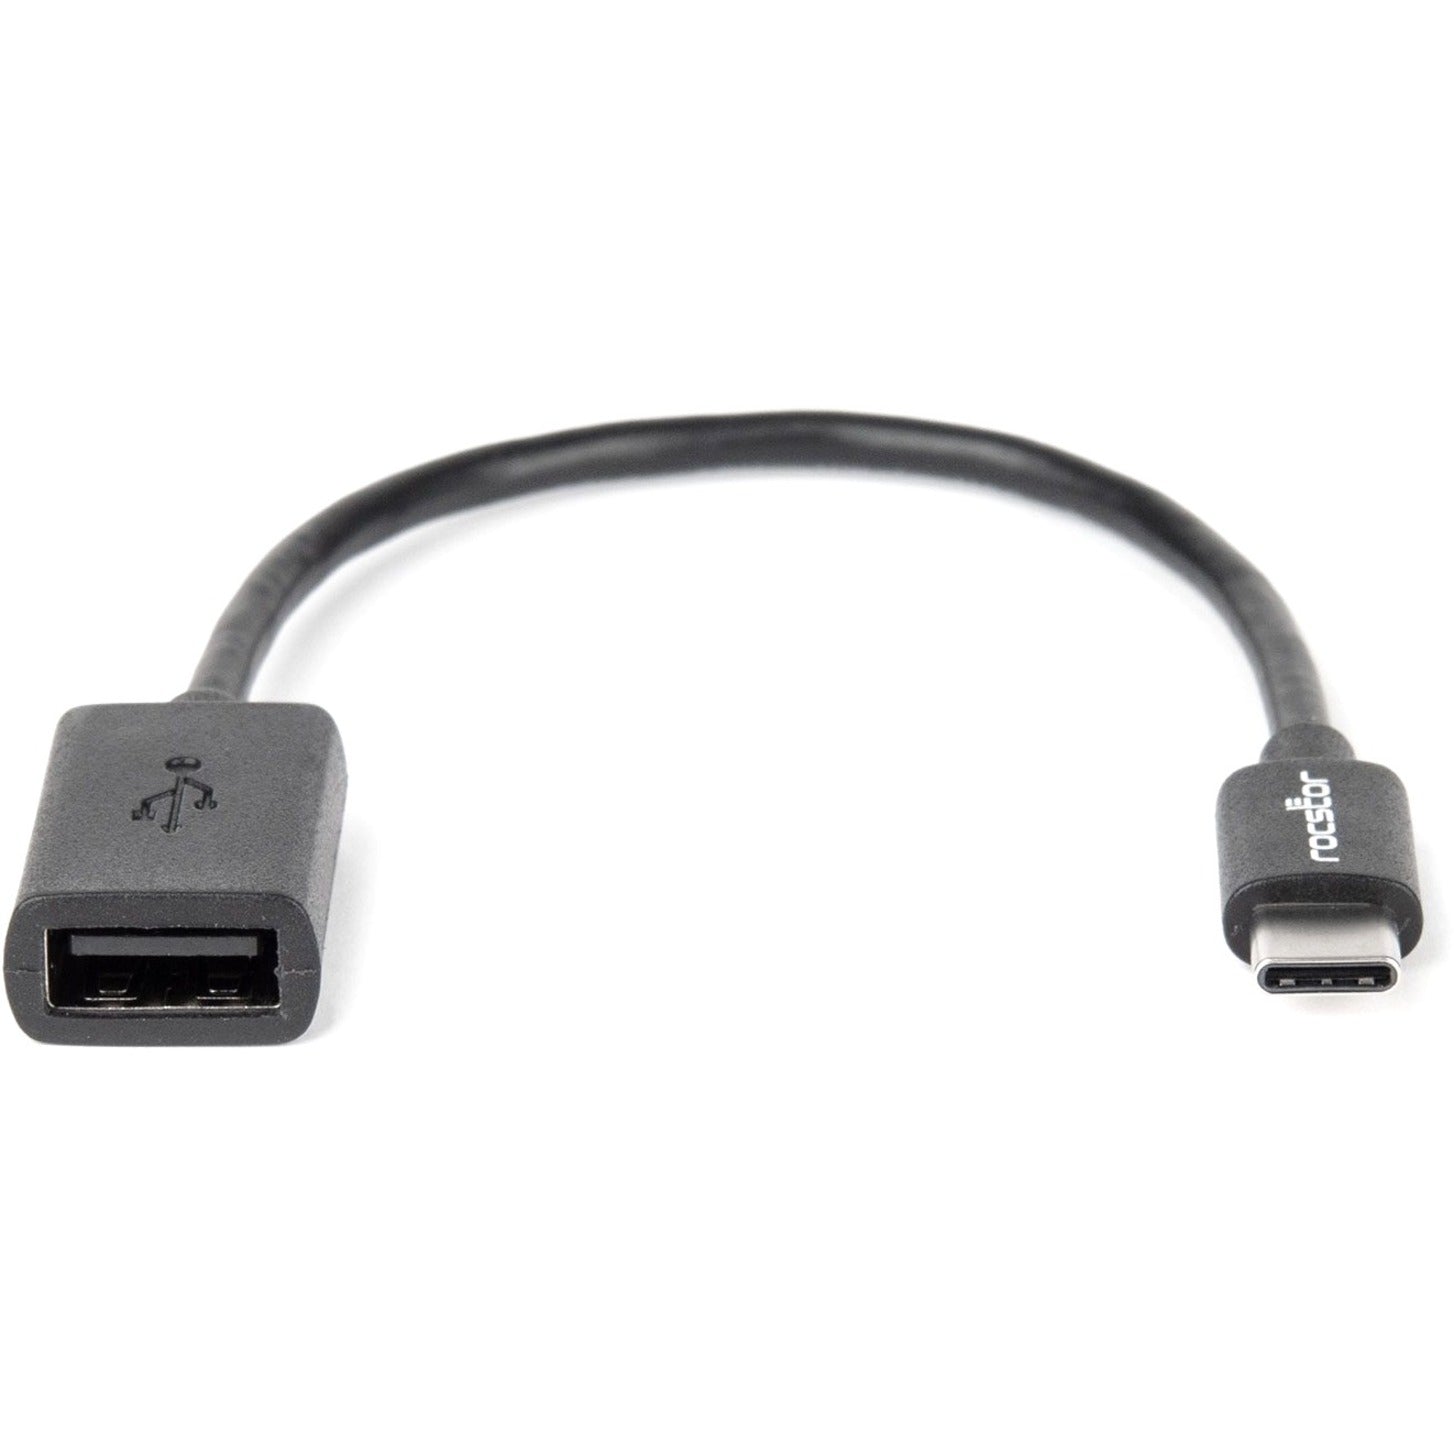 Rocstor Y10C142-B1 محول نقل بيانات USB ممتاز ، USB-C Gen1 إلى USB 2.0 النوع A ذكر / أنثى